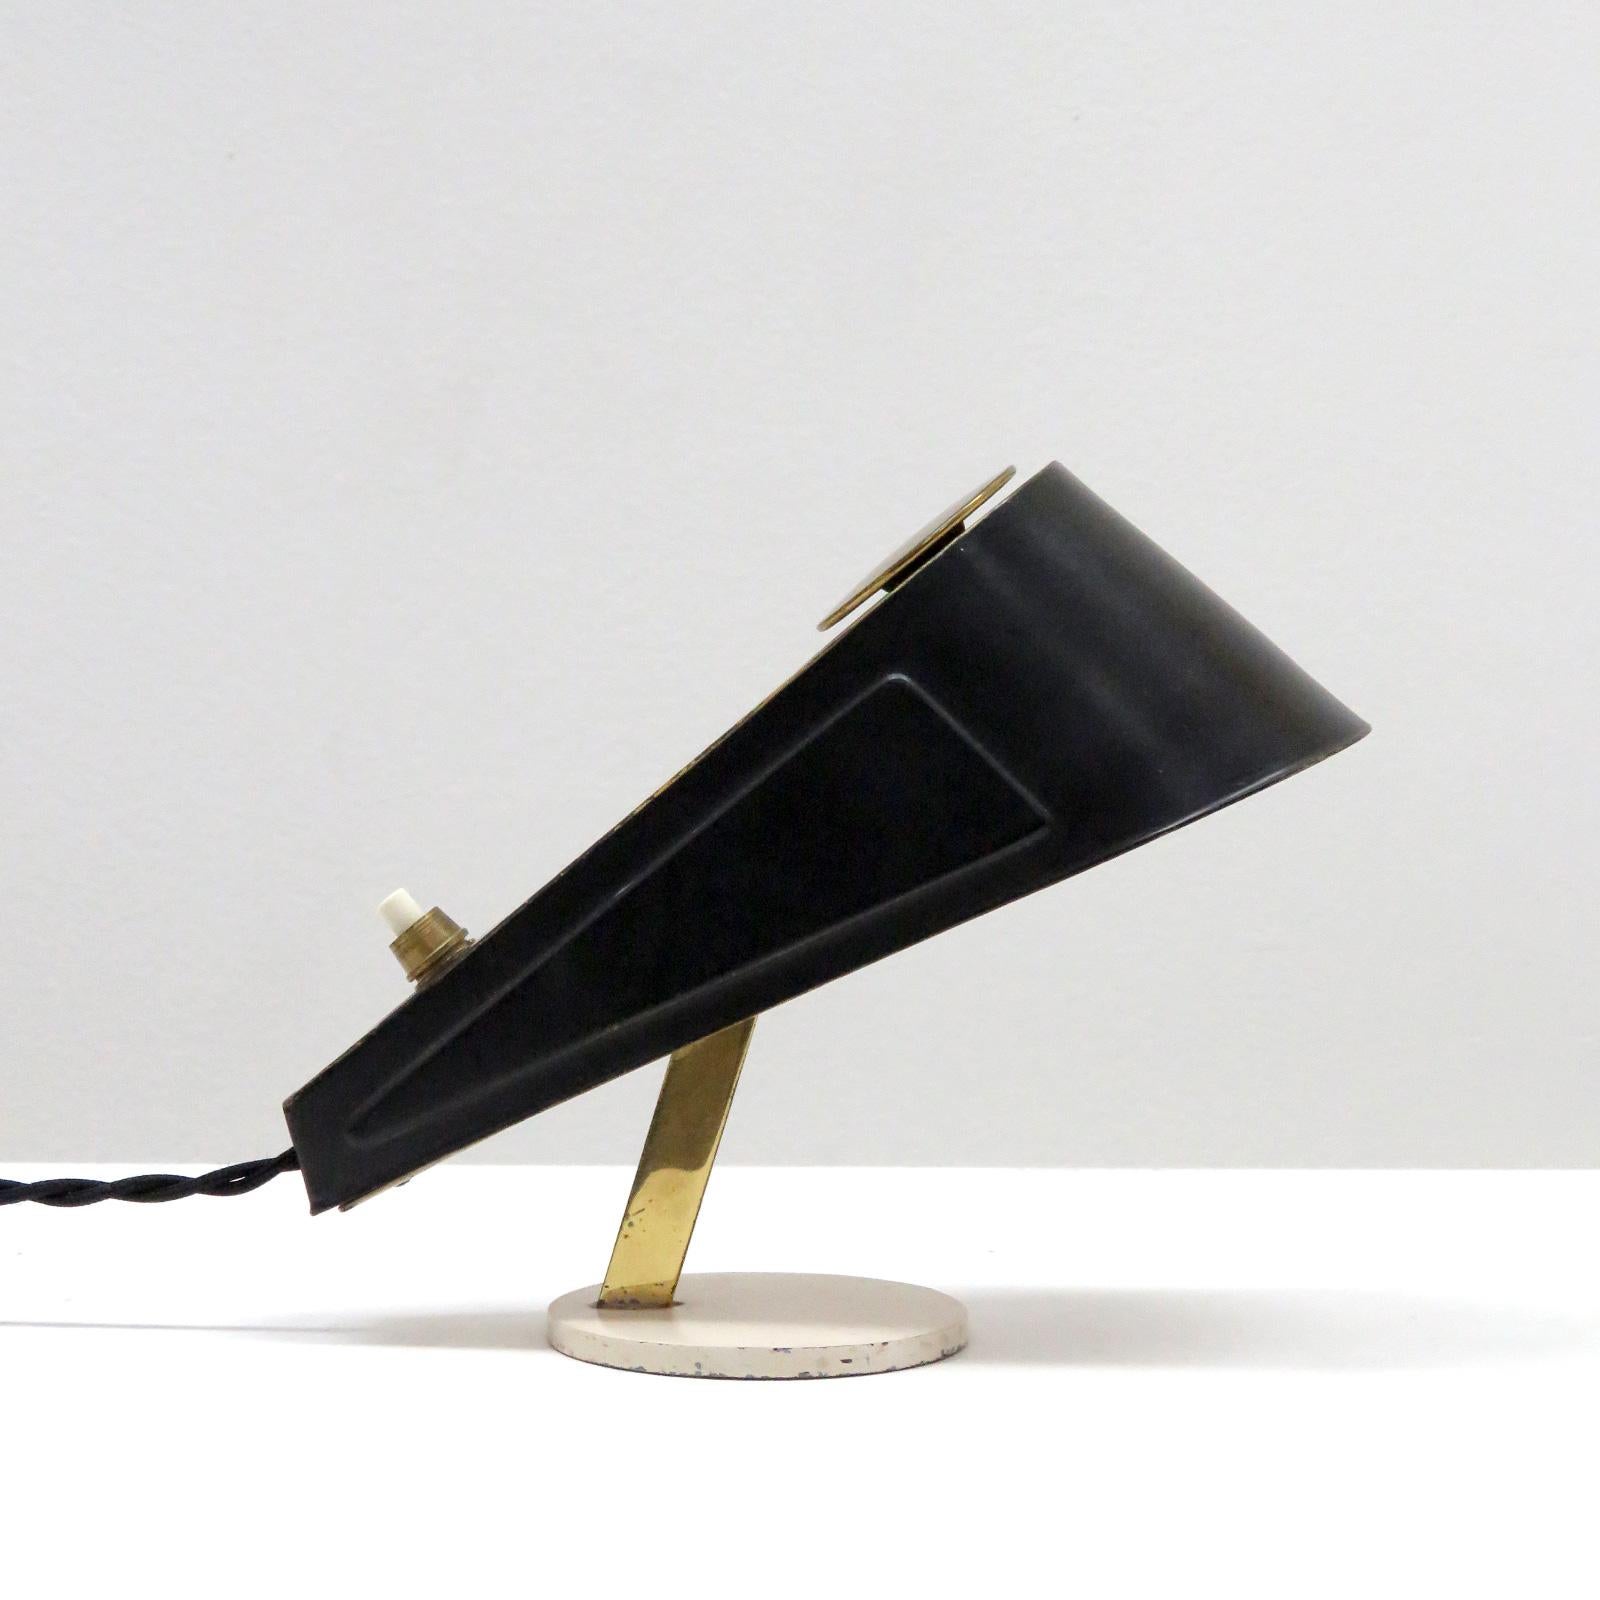 Petite lampe de table italienne unique des années 1960 en laiton et métal émaillé noir et blanc cassé, interrupteur marche/arrêt à l'arrière du corps réglable. Câblée pour les normes américaines, une douille E12, puissance maximale de 60 W, ampoule